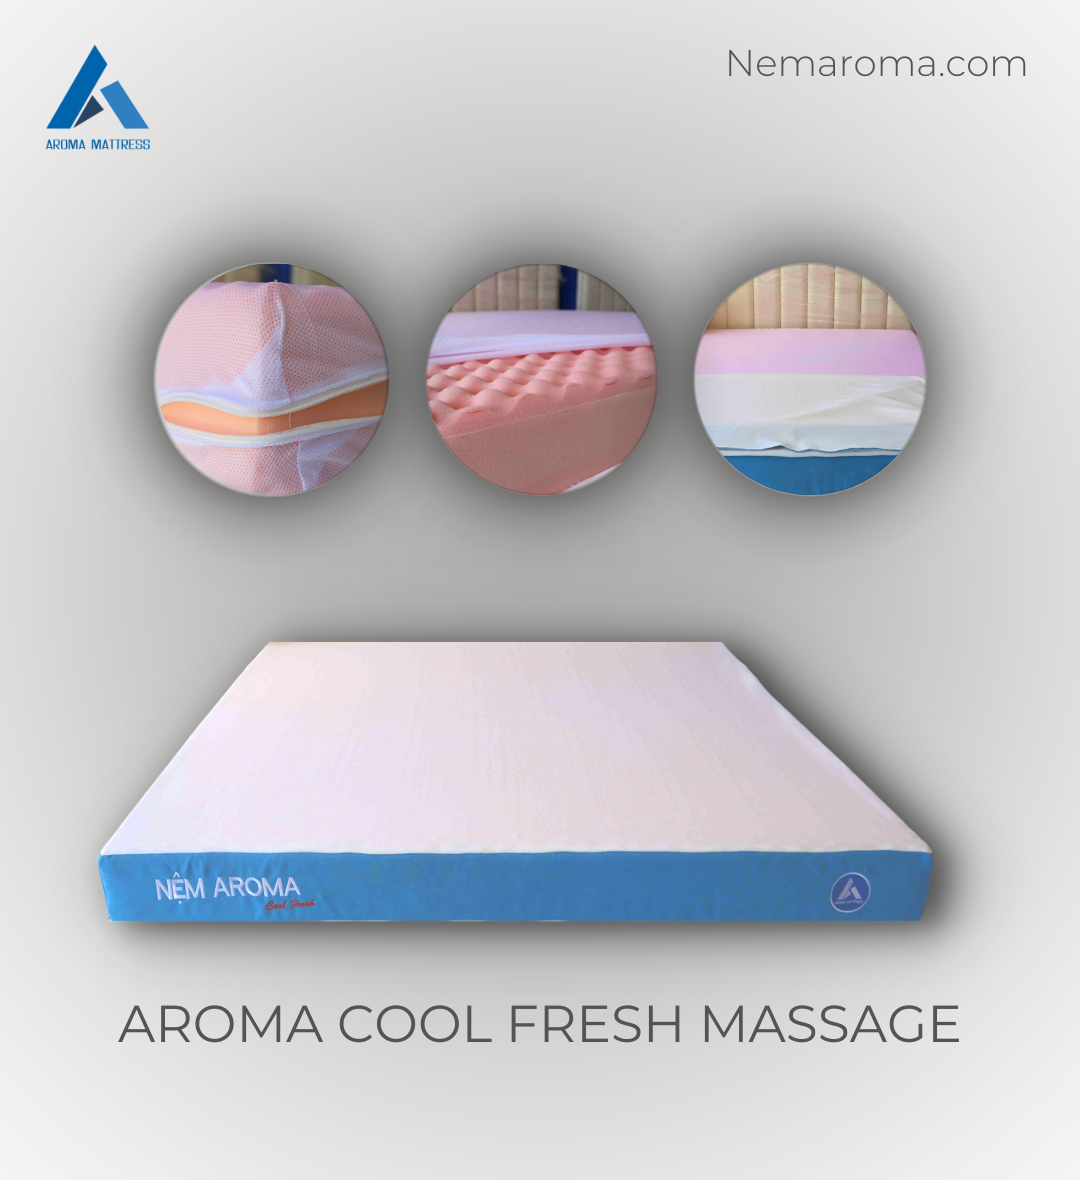 Nệm foam aroma cool fresh massage có điểm gì nổi bật